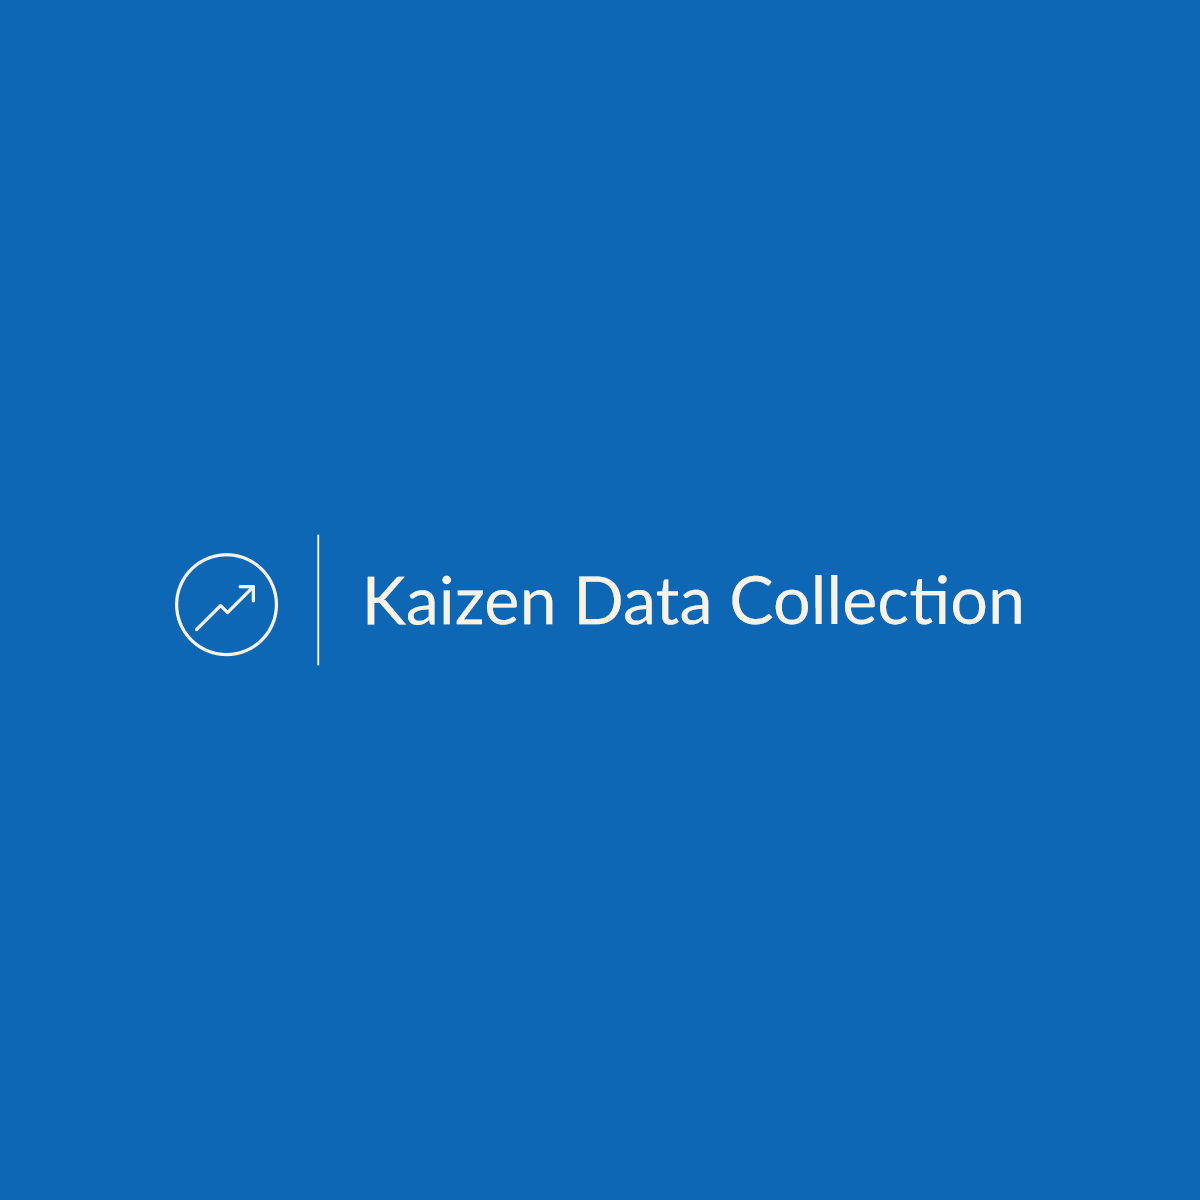 Kaizen Data Collection